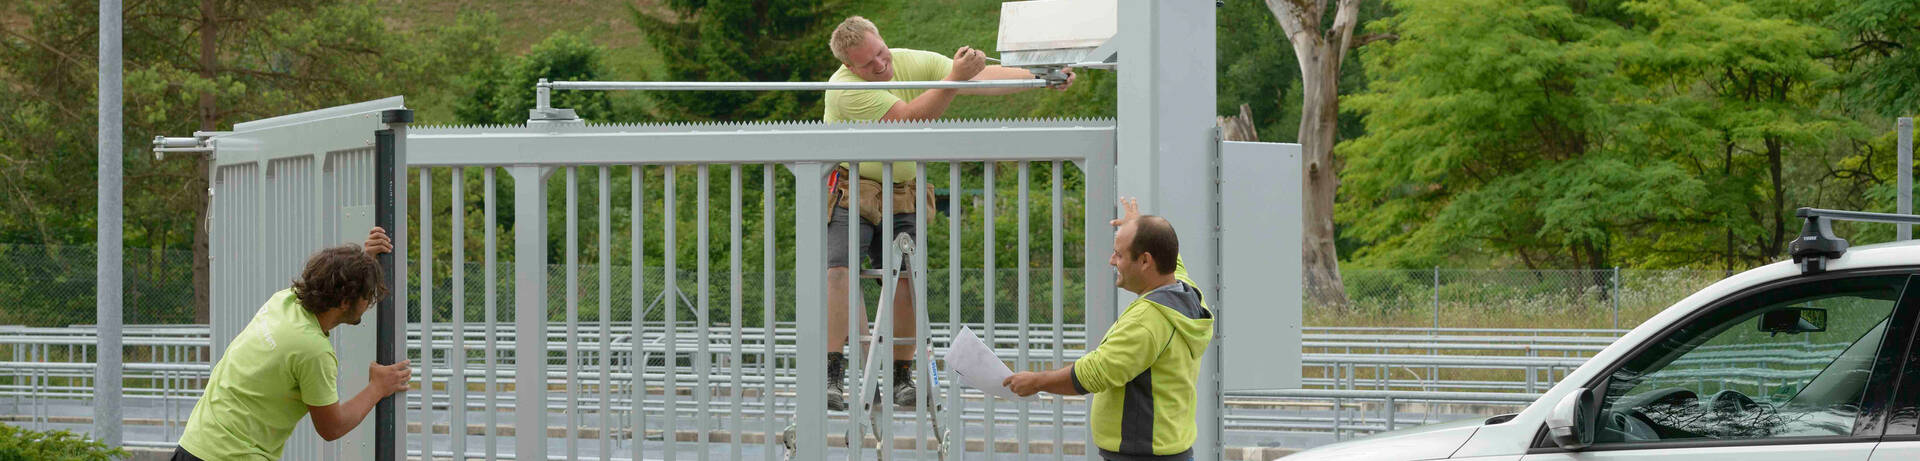 Zaunmonteure montieren einen Zaun, automatisches Schiebetor für einen Eingangsbereich in der Industrie | © Zaunteam